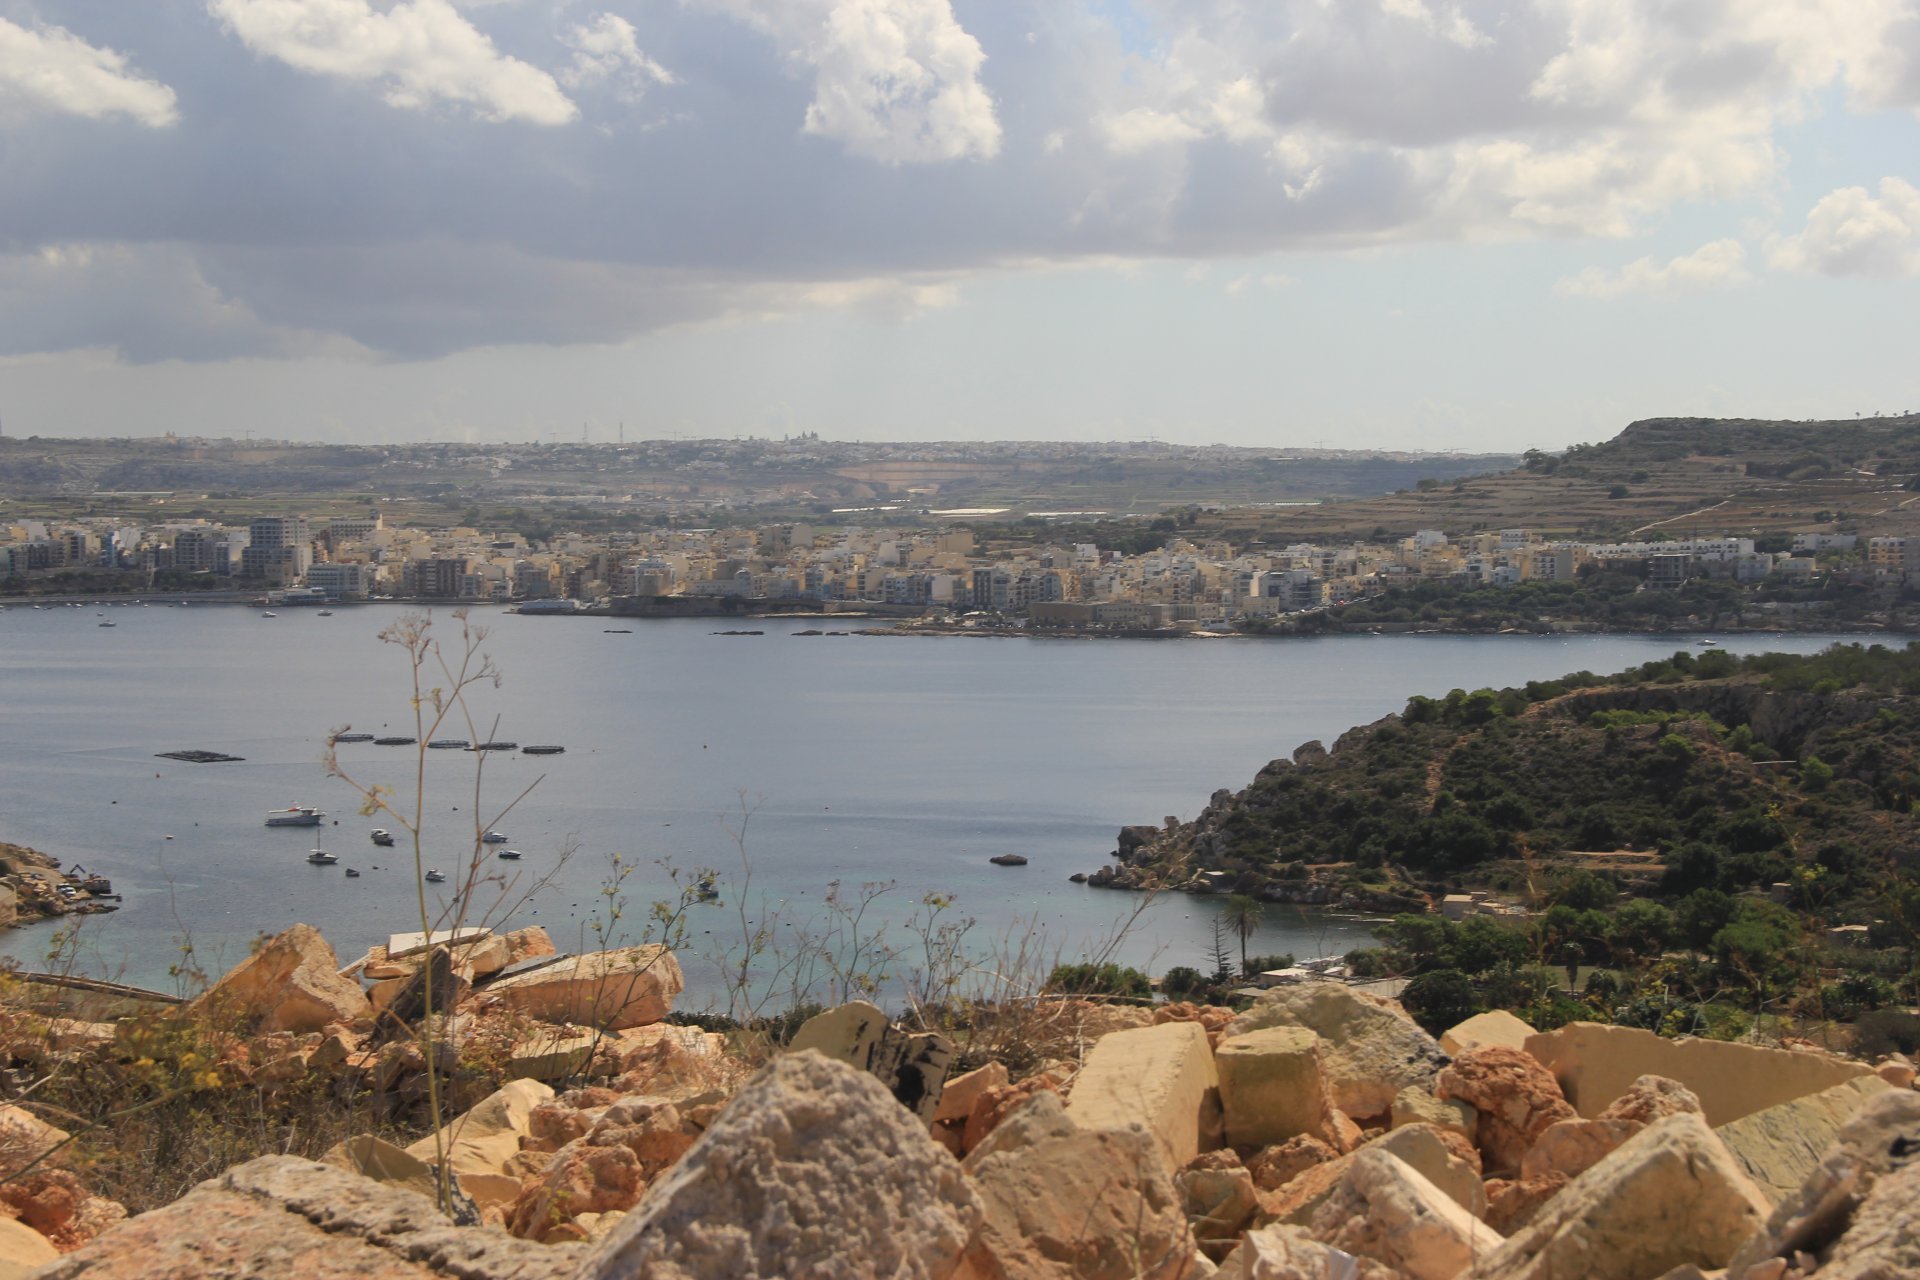 Na szlaku ponad Zatoką św. Pawła. W tle miasta Buġibba i San Pawl il-Baħar